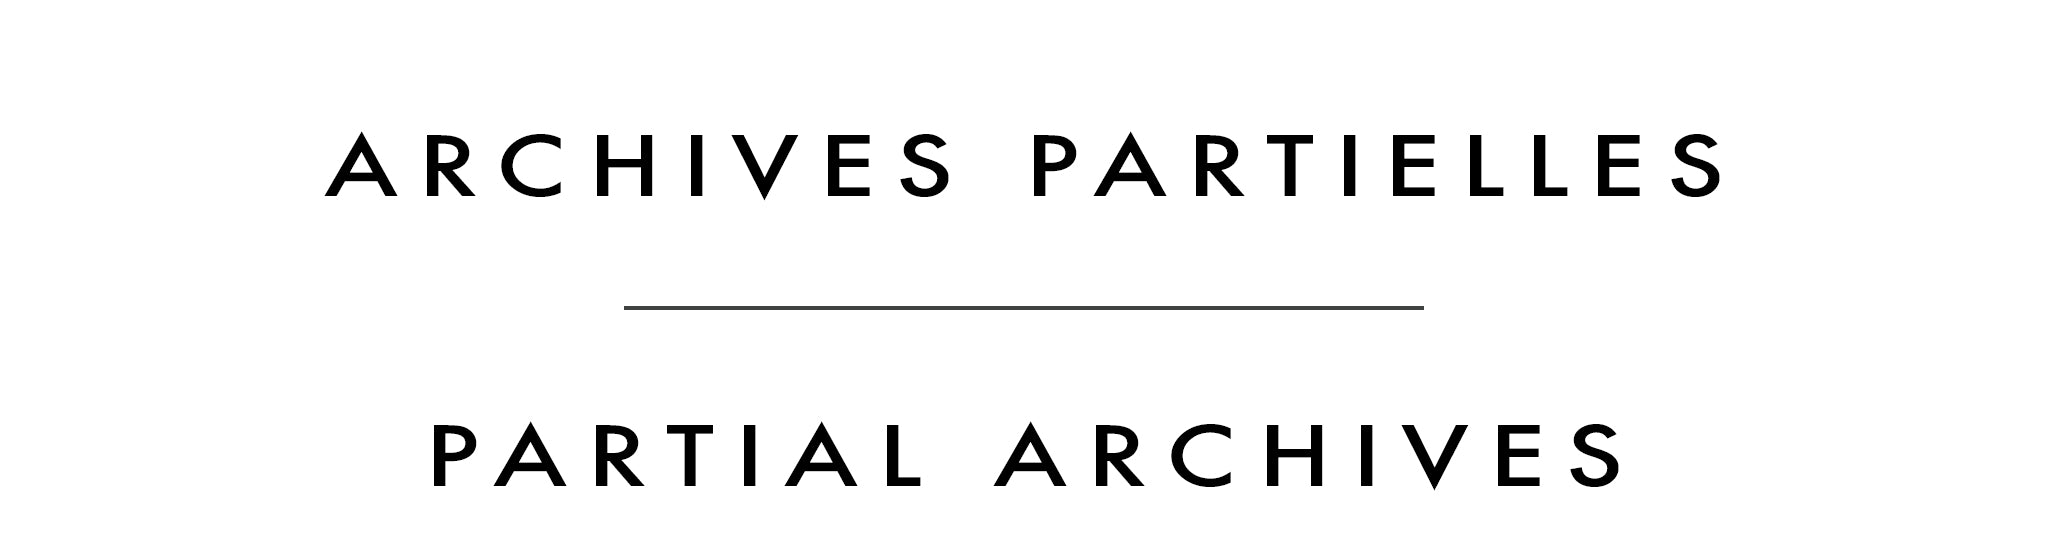 Archives partielles | Partial Archives | Iosif Derecichei